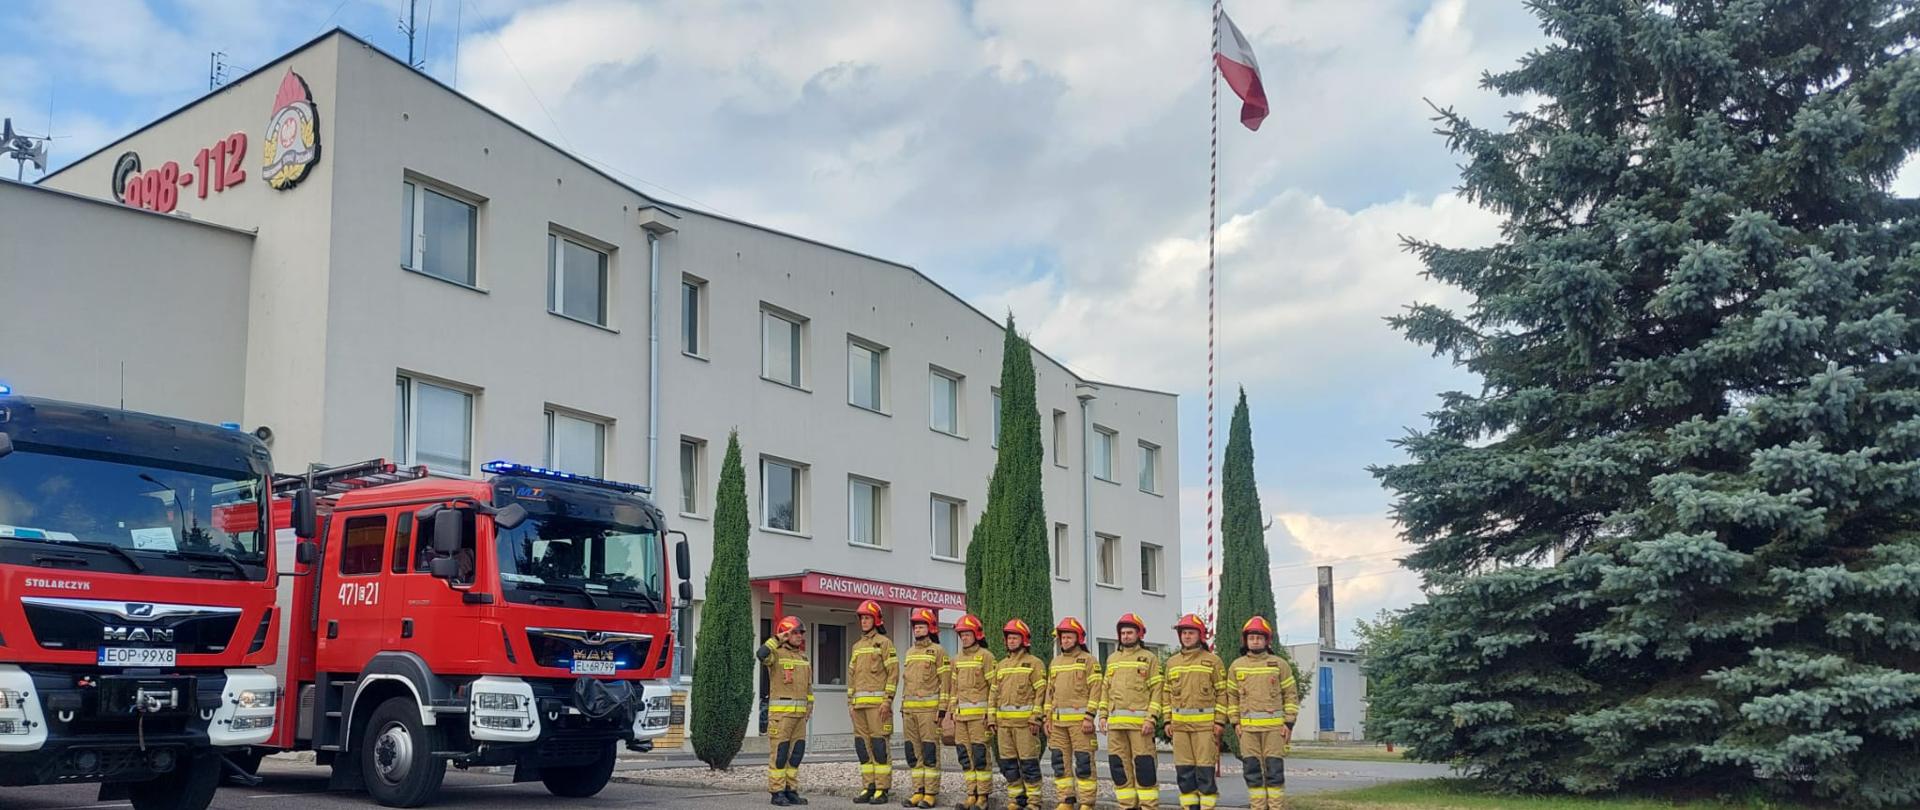 Zdjęcie przed Komendą Powiatową PSP w Opocznie przedstawia dwa wozy bojowe z włączonymi sygnałami świetlnymi oraz strażaków w umundurowaniu specjalnym oddających honory.